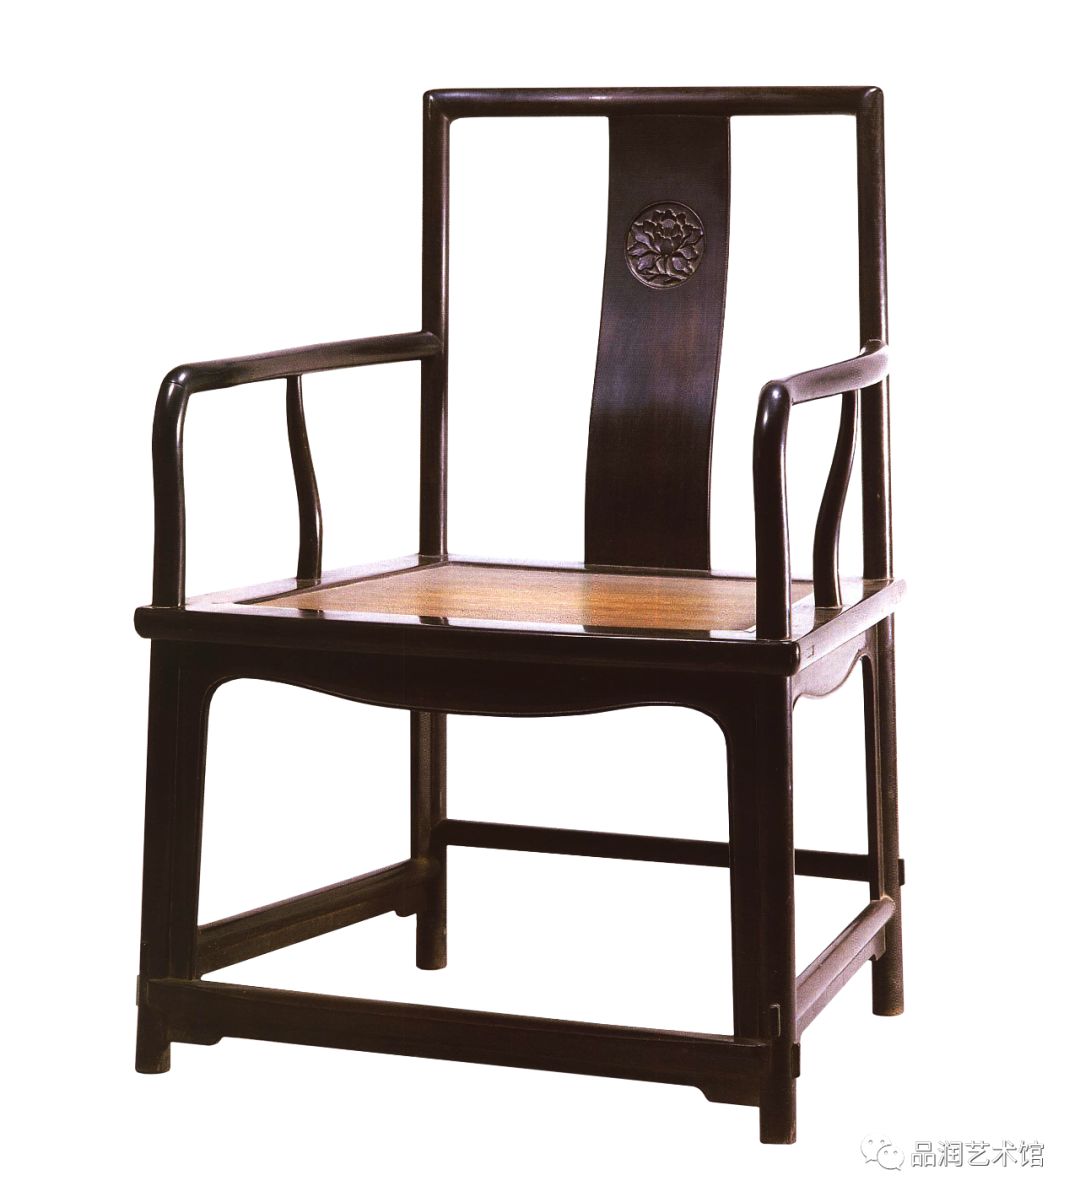 明式官帽椅是中国明代家具中的经典类型之一,它具有明式家具线条洗炼